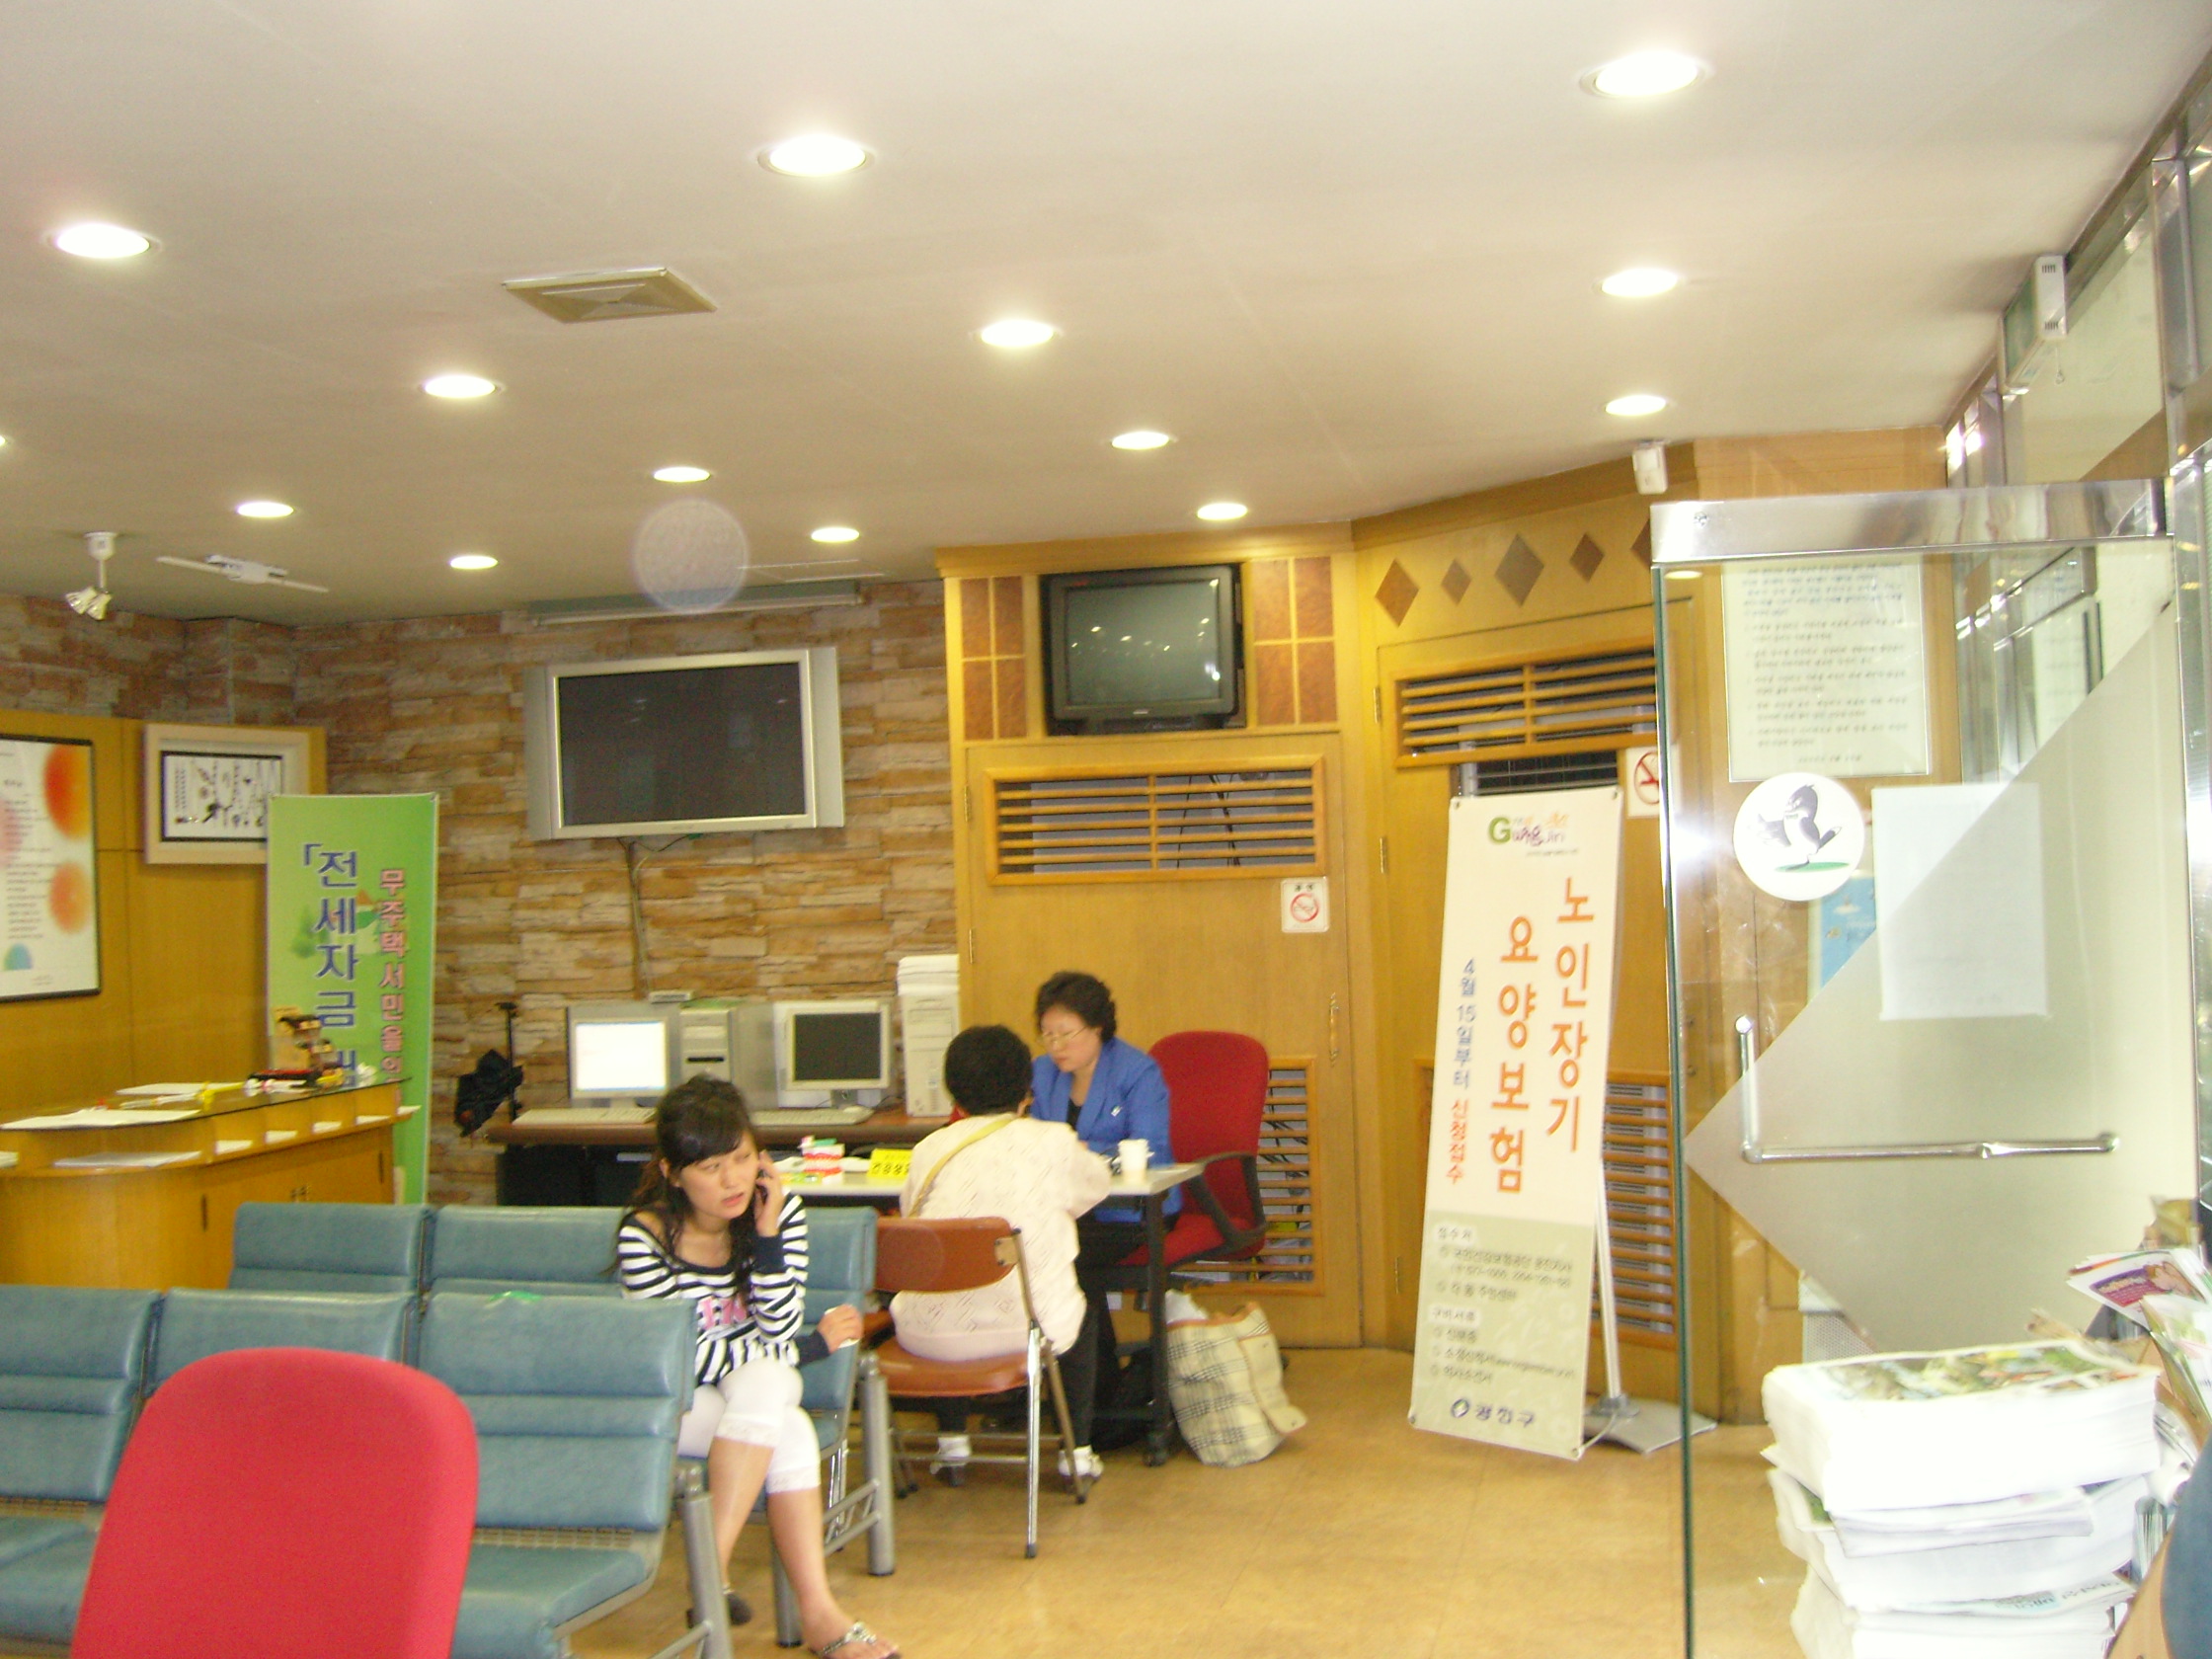 구의제1동주민센터 건강의날 무료보건의료서비스 전경(2008. 5. 13)